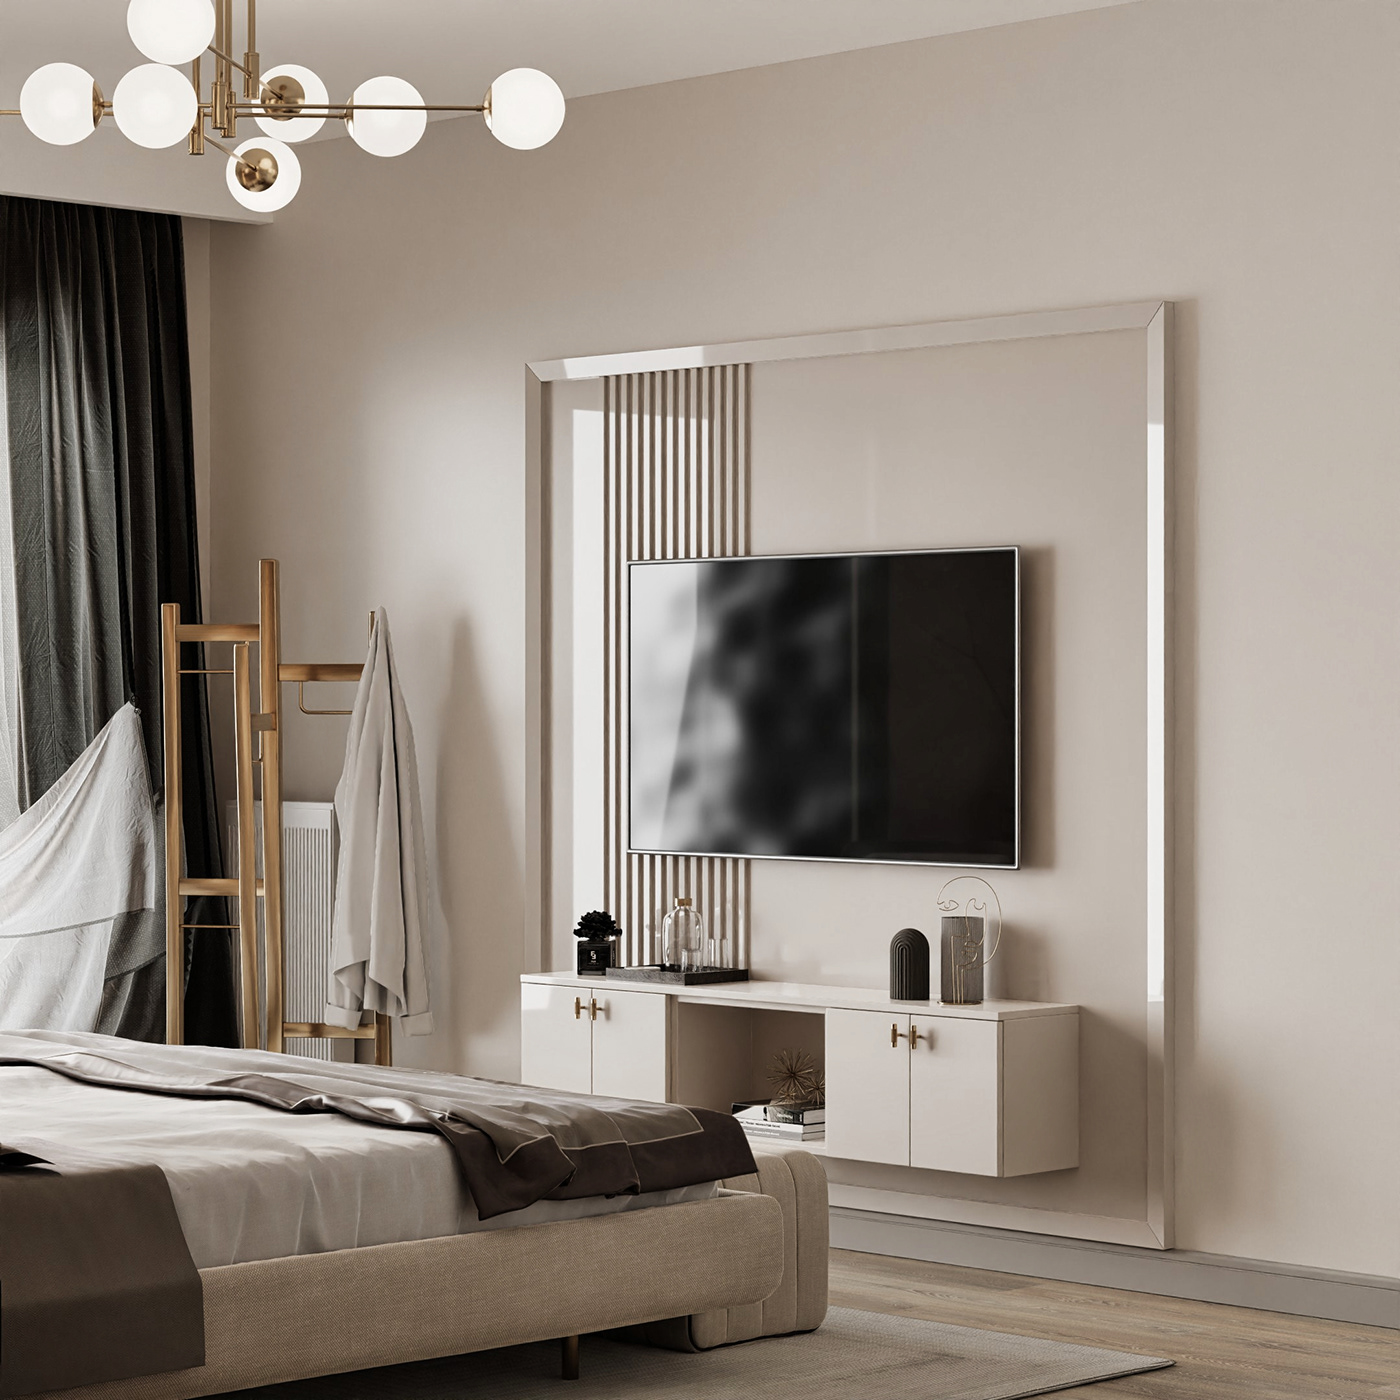 interior design  architecture Render 3D modern visualization archviz design bedroom Interior